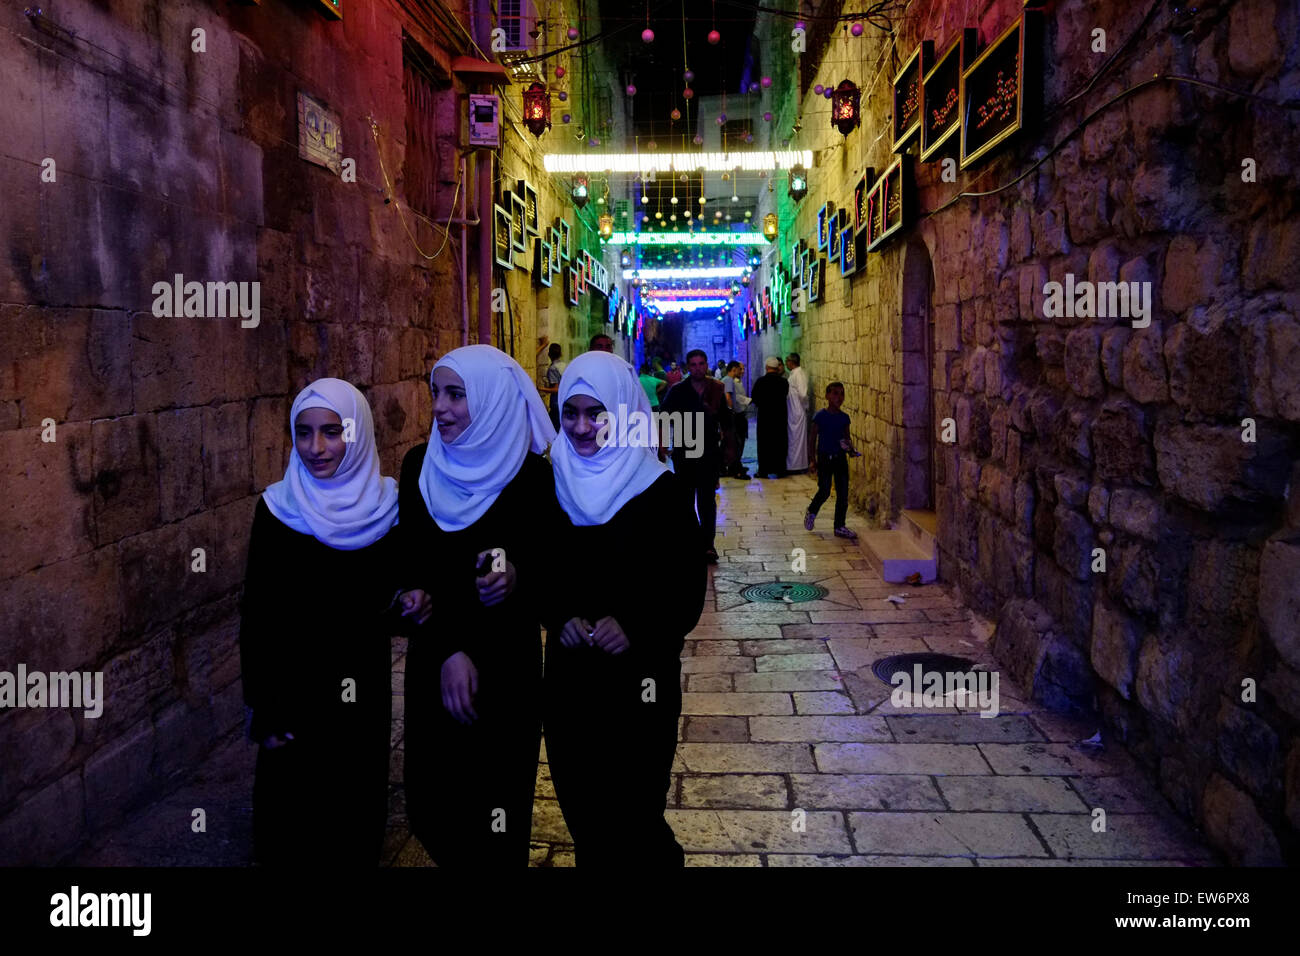 Bab Hutta ruelle dans le quartier musulman avec des lumières festives pendant le mois sacré musulman du Ramadan dans la vieille ville de Jérusalem le 18 juin 2015. Les musulmans du monde entier observent le Ramadan comme un mois de jeûne et il est considéré comme l'un des cinq piliers de l'Islam. Banque D'Images